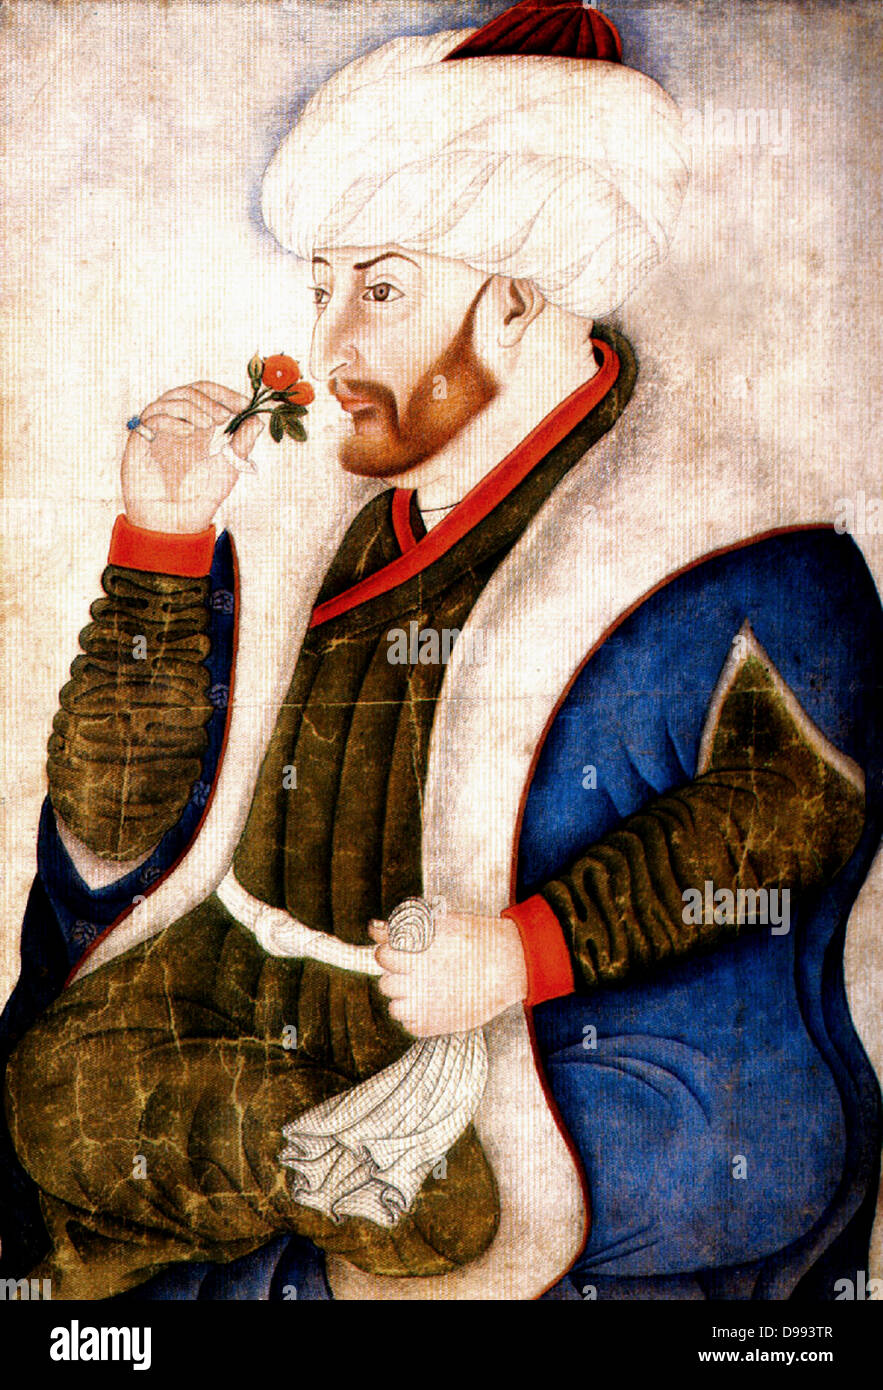 Suleiman I, (1494 - 1566) lungo-sultano regnante dell'Impero Ottomano, dal 1520 fino alla sua morte in 1566.Solimano il Magnifico marciando con esercito in Nakhichevan, estate 1554. Data 1561(1561) dipinto nel 1480 dipinto dal miniatore ottomano Sinan Bey Foto Stock